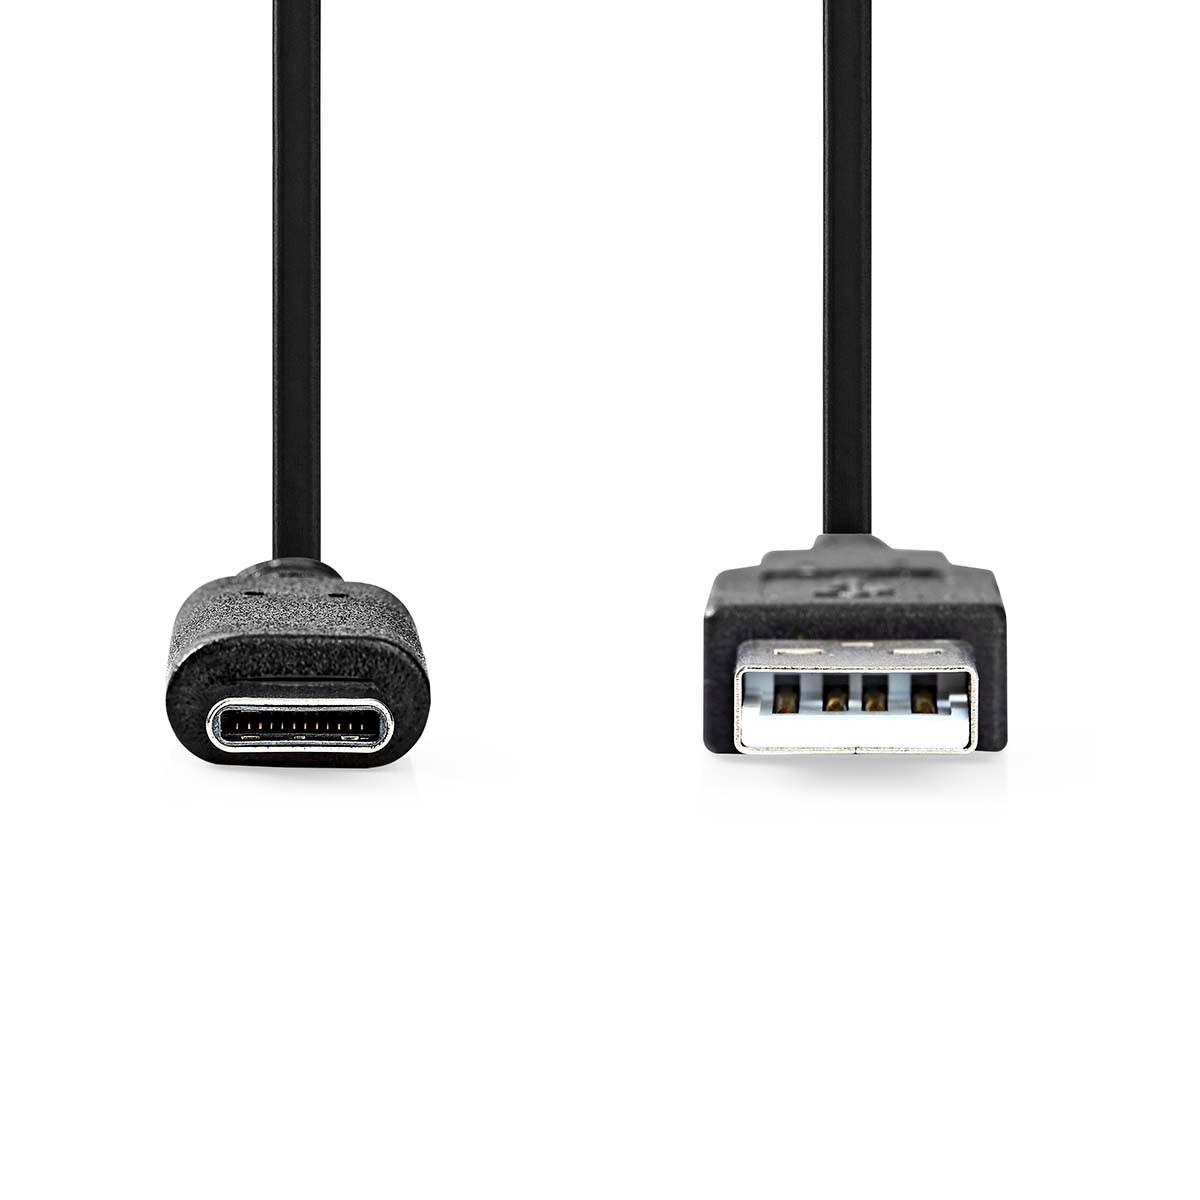 Nedis  Cavo USB | USB 3.2 Gen 2 | USB-A maschio | USB-C™ Maschio | 60W| 10 Gbps | Nichelato | 1,00 | Rotondo | PVC | Nero | Etichetta 